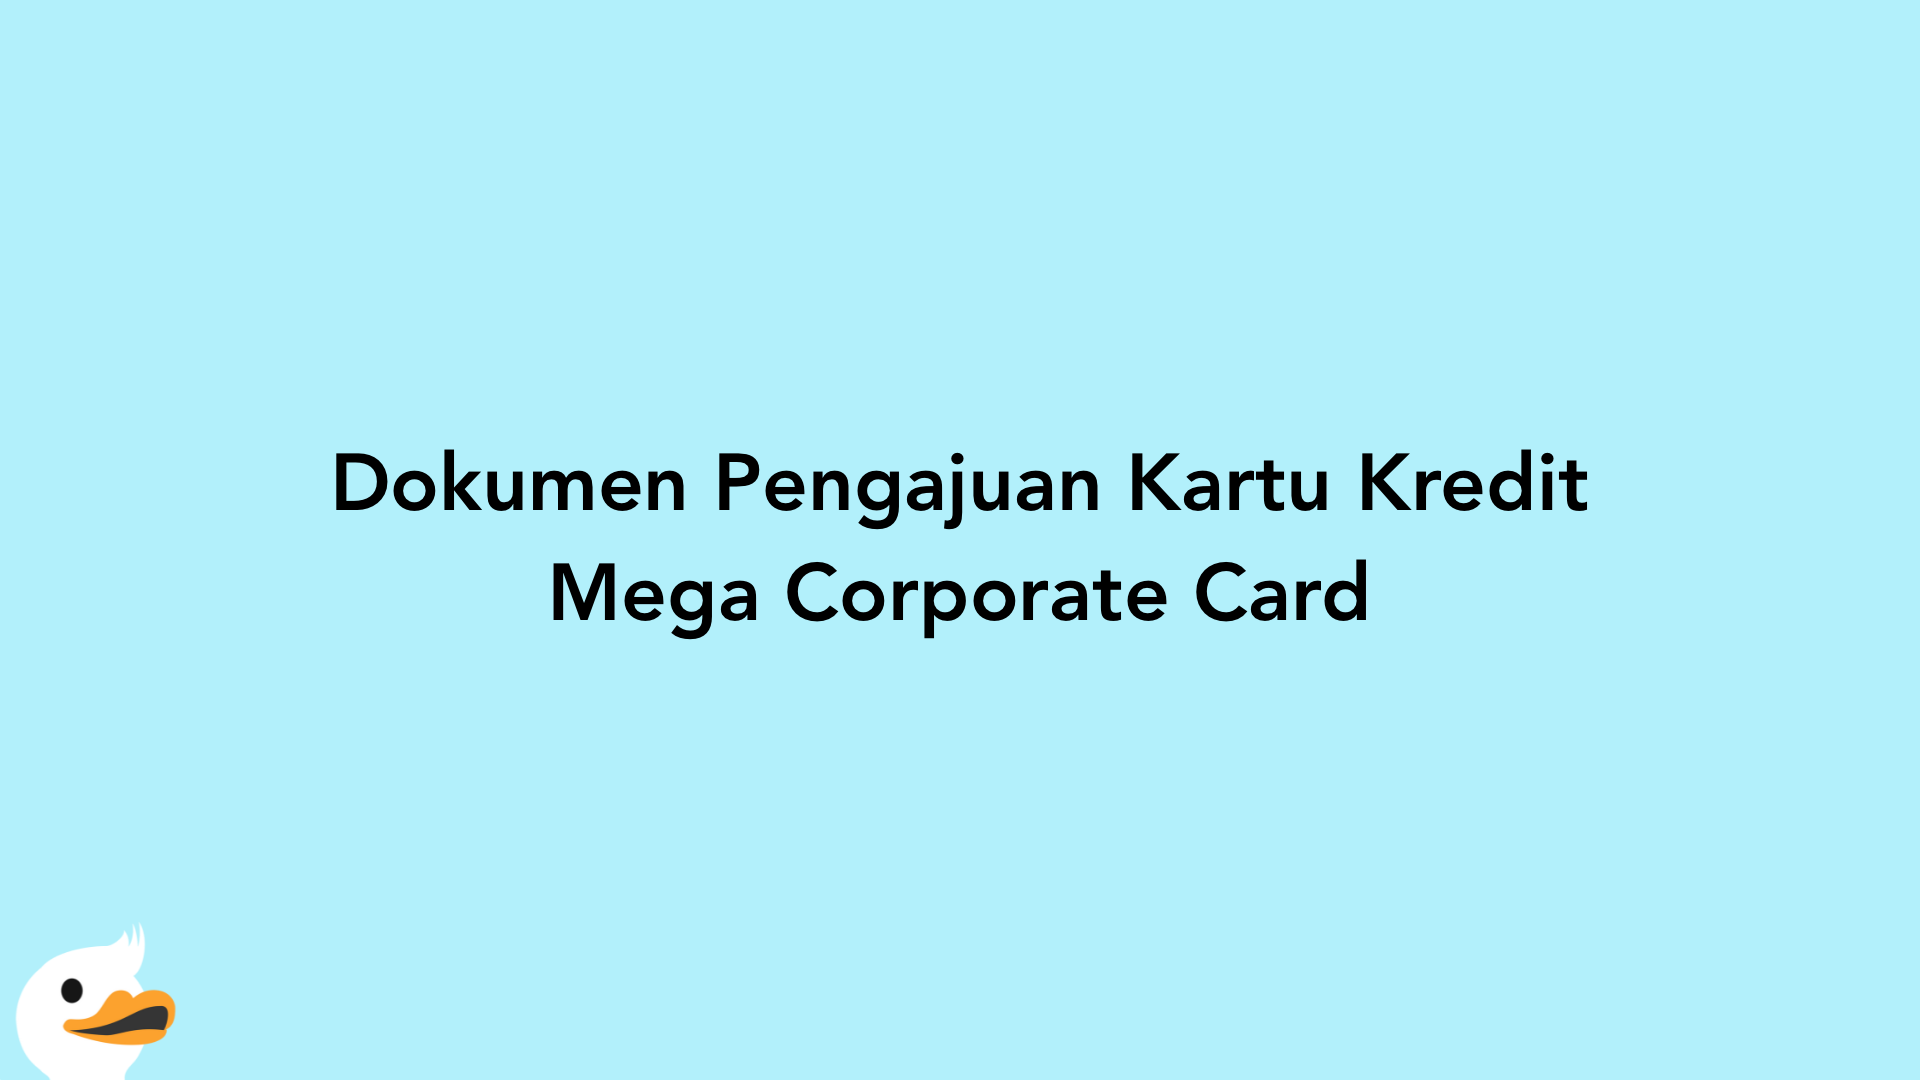 Dokumen Pengajuan Kartu Kredit Mega Corporate Card